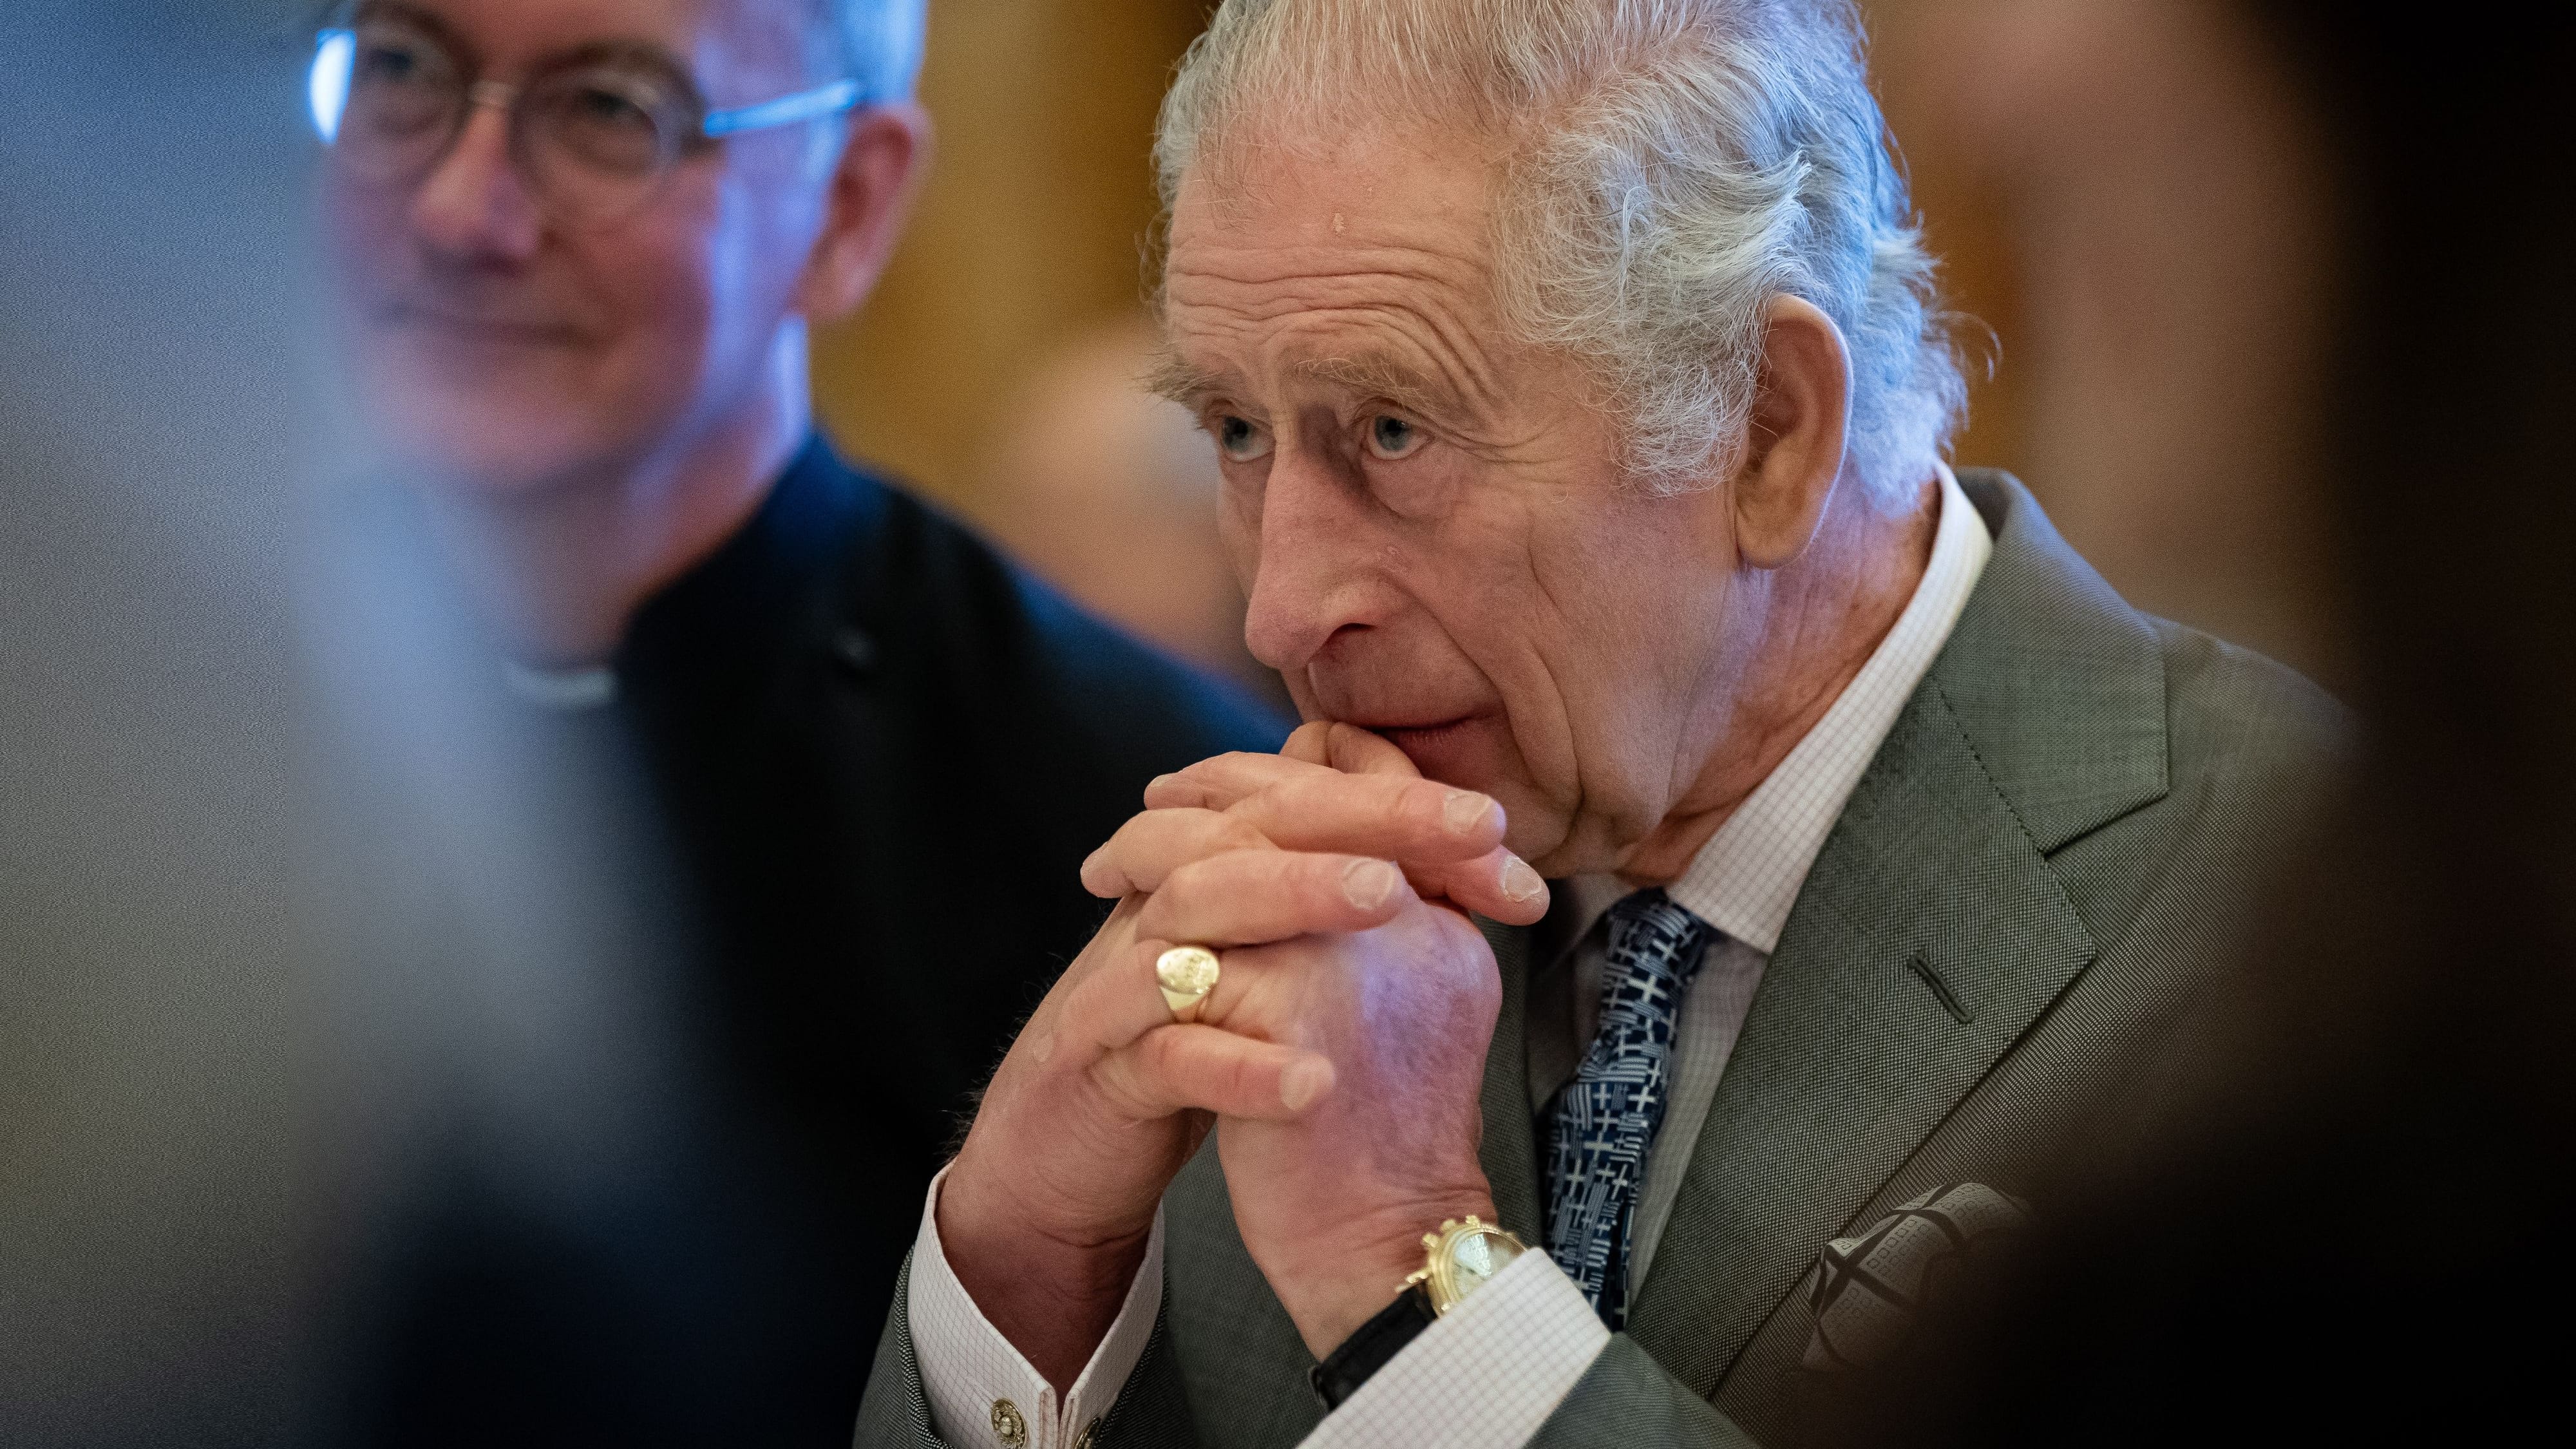 König Charles III. hat Krebs: Größte Herausforderung steht ihm noch bevor